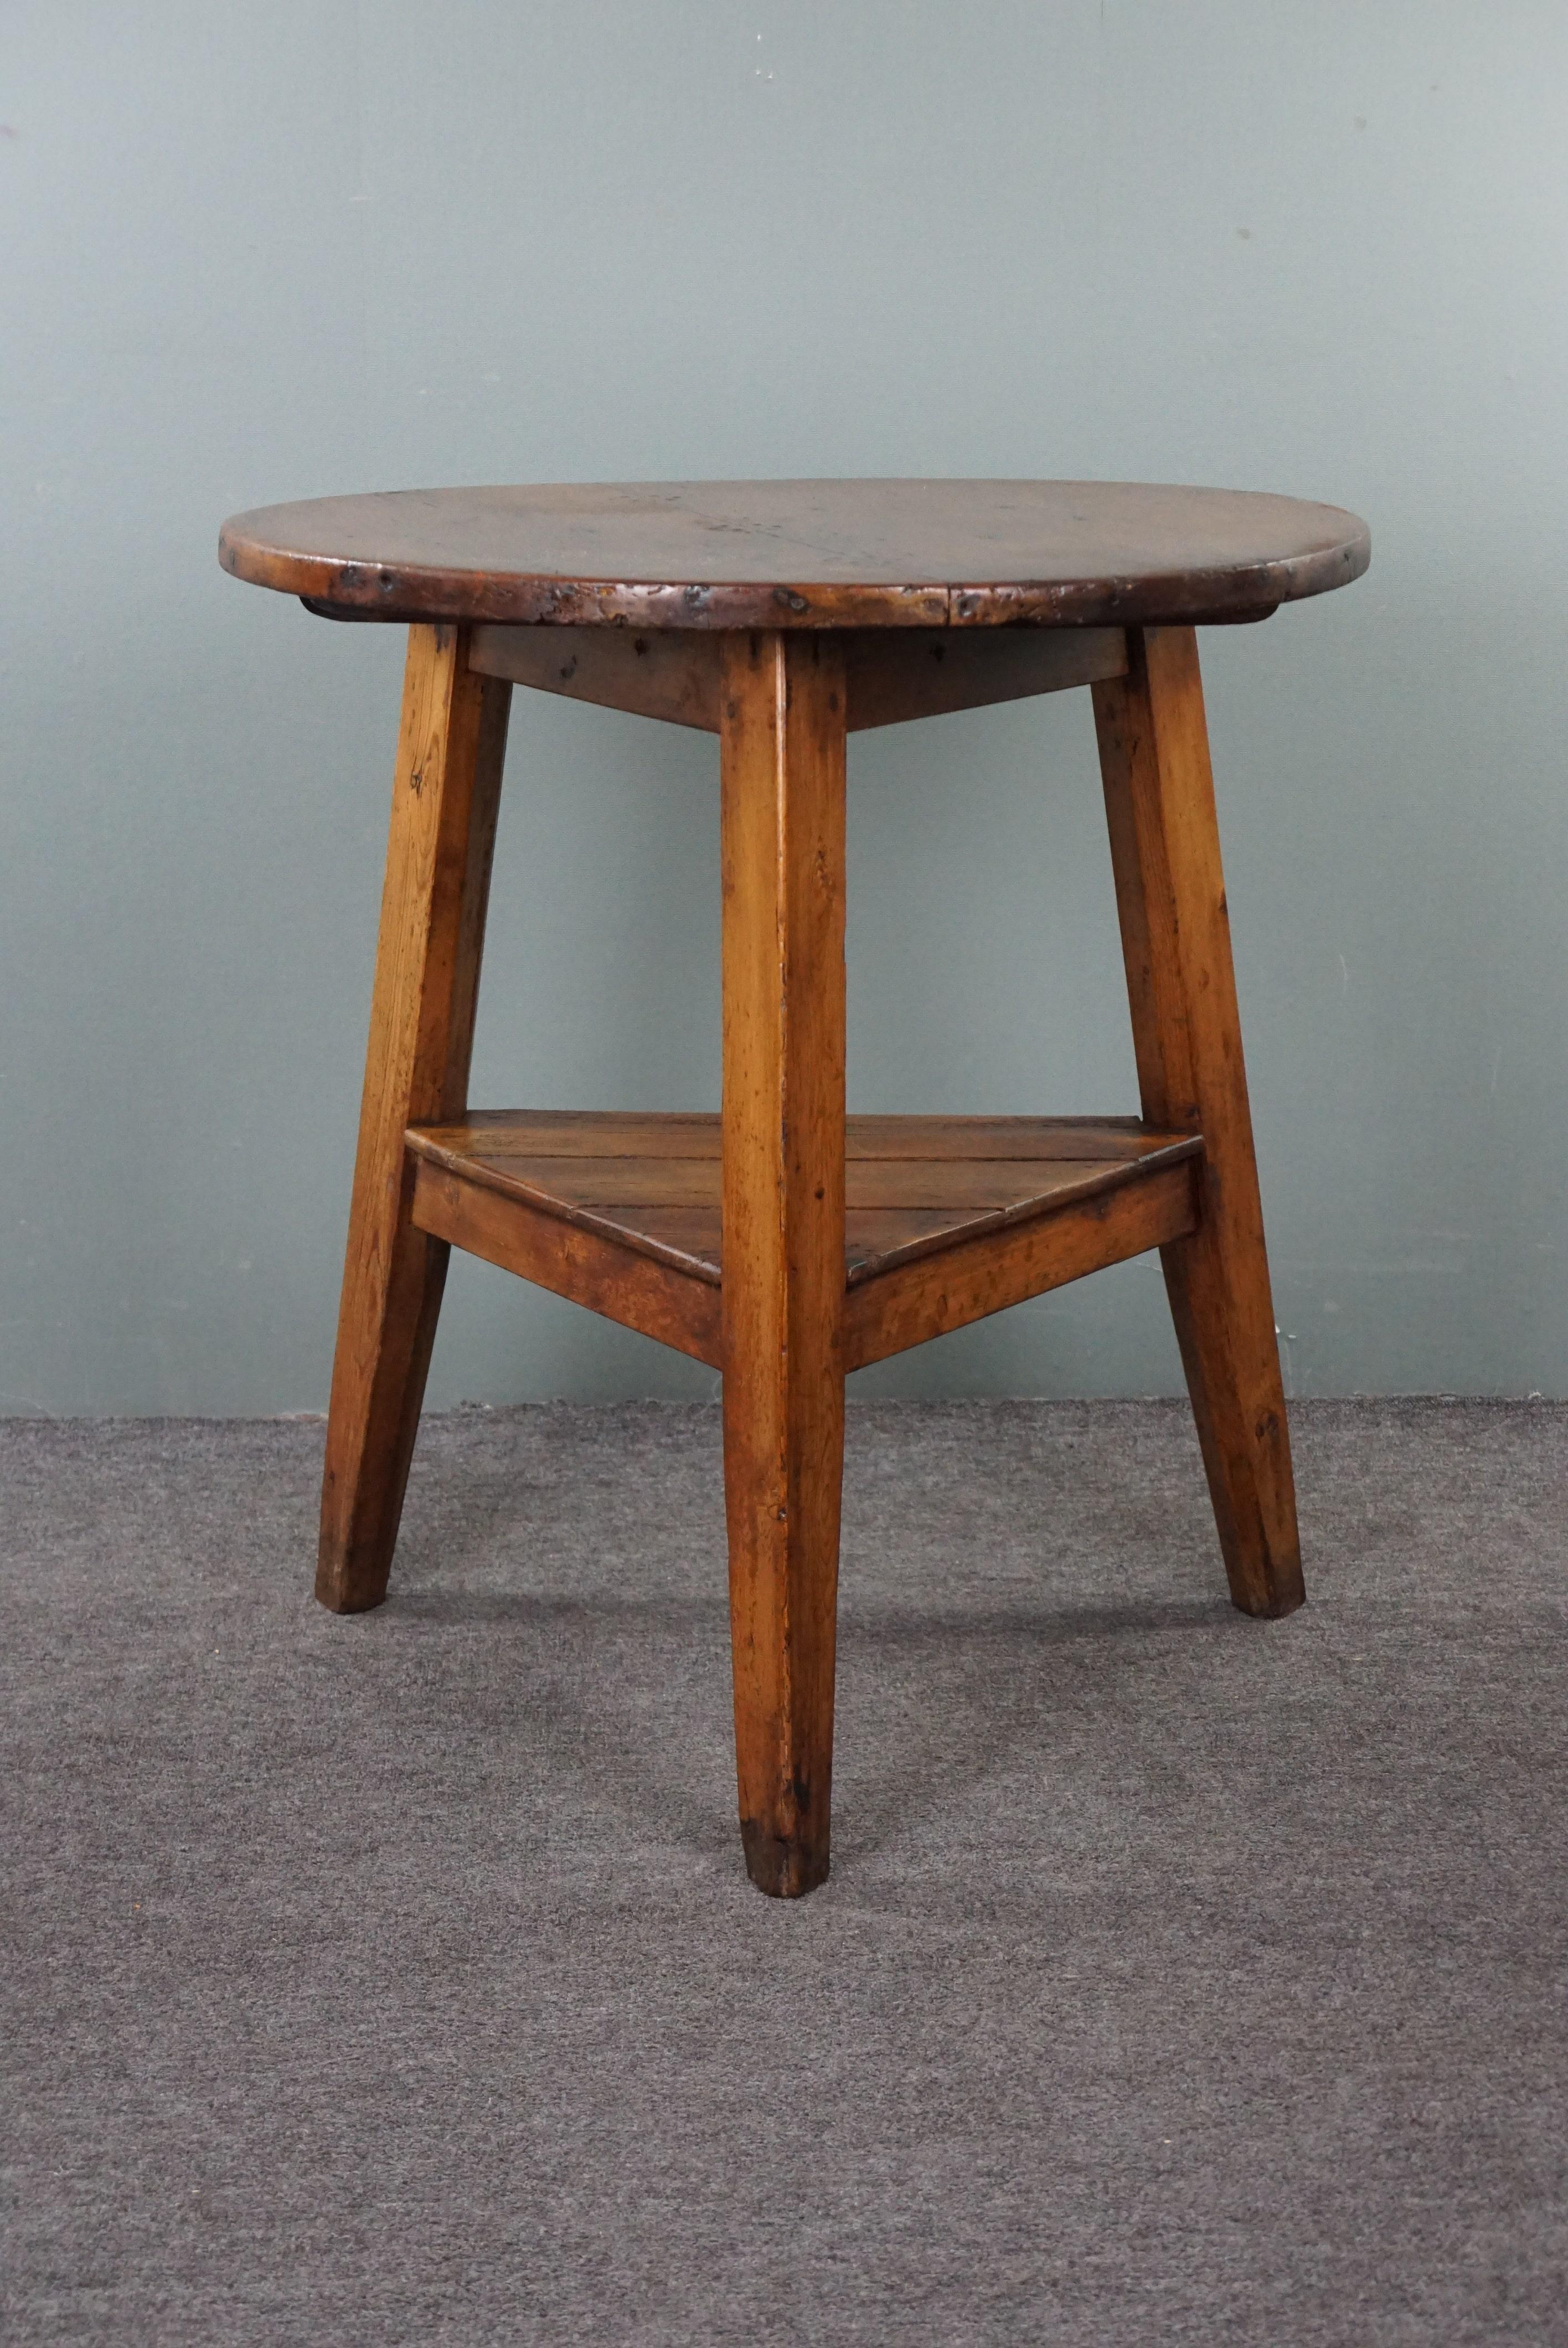 Angeboten wird dieser schöne, hohe, honigfarbene, englische Kieferholztisch aus dem frühen 19. Jahrhundert mit Originalnägeln und Oxidation. Wir selbst sind große Fans von Cricket-Tischen. Nicht nur wegen ihres einzigartigen und unwiderstehlichen